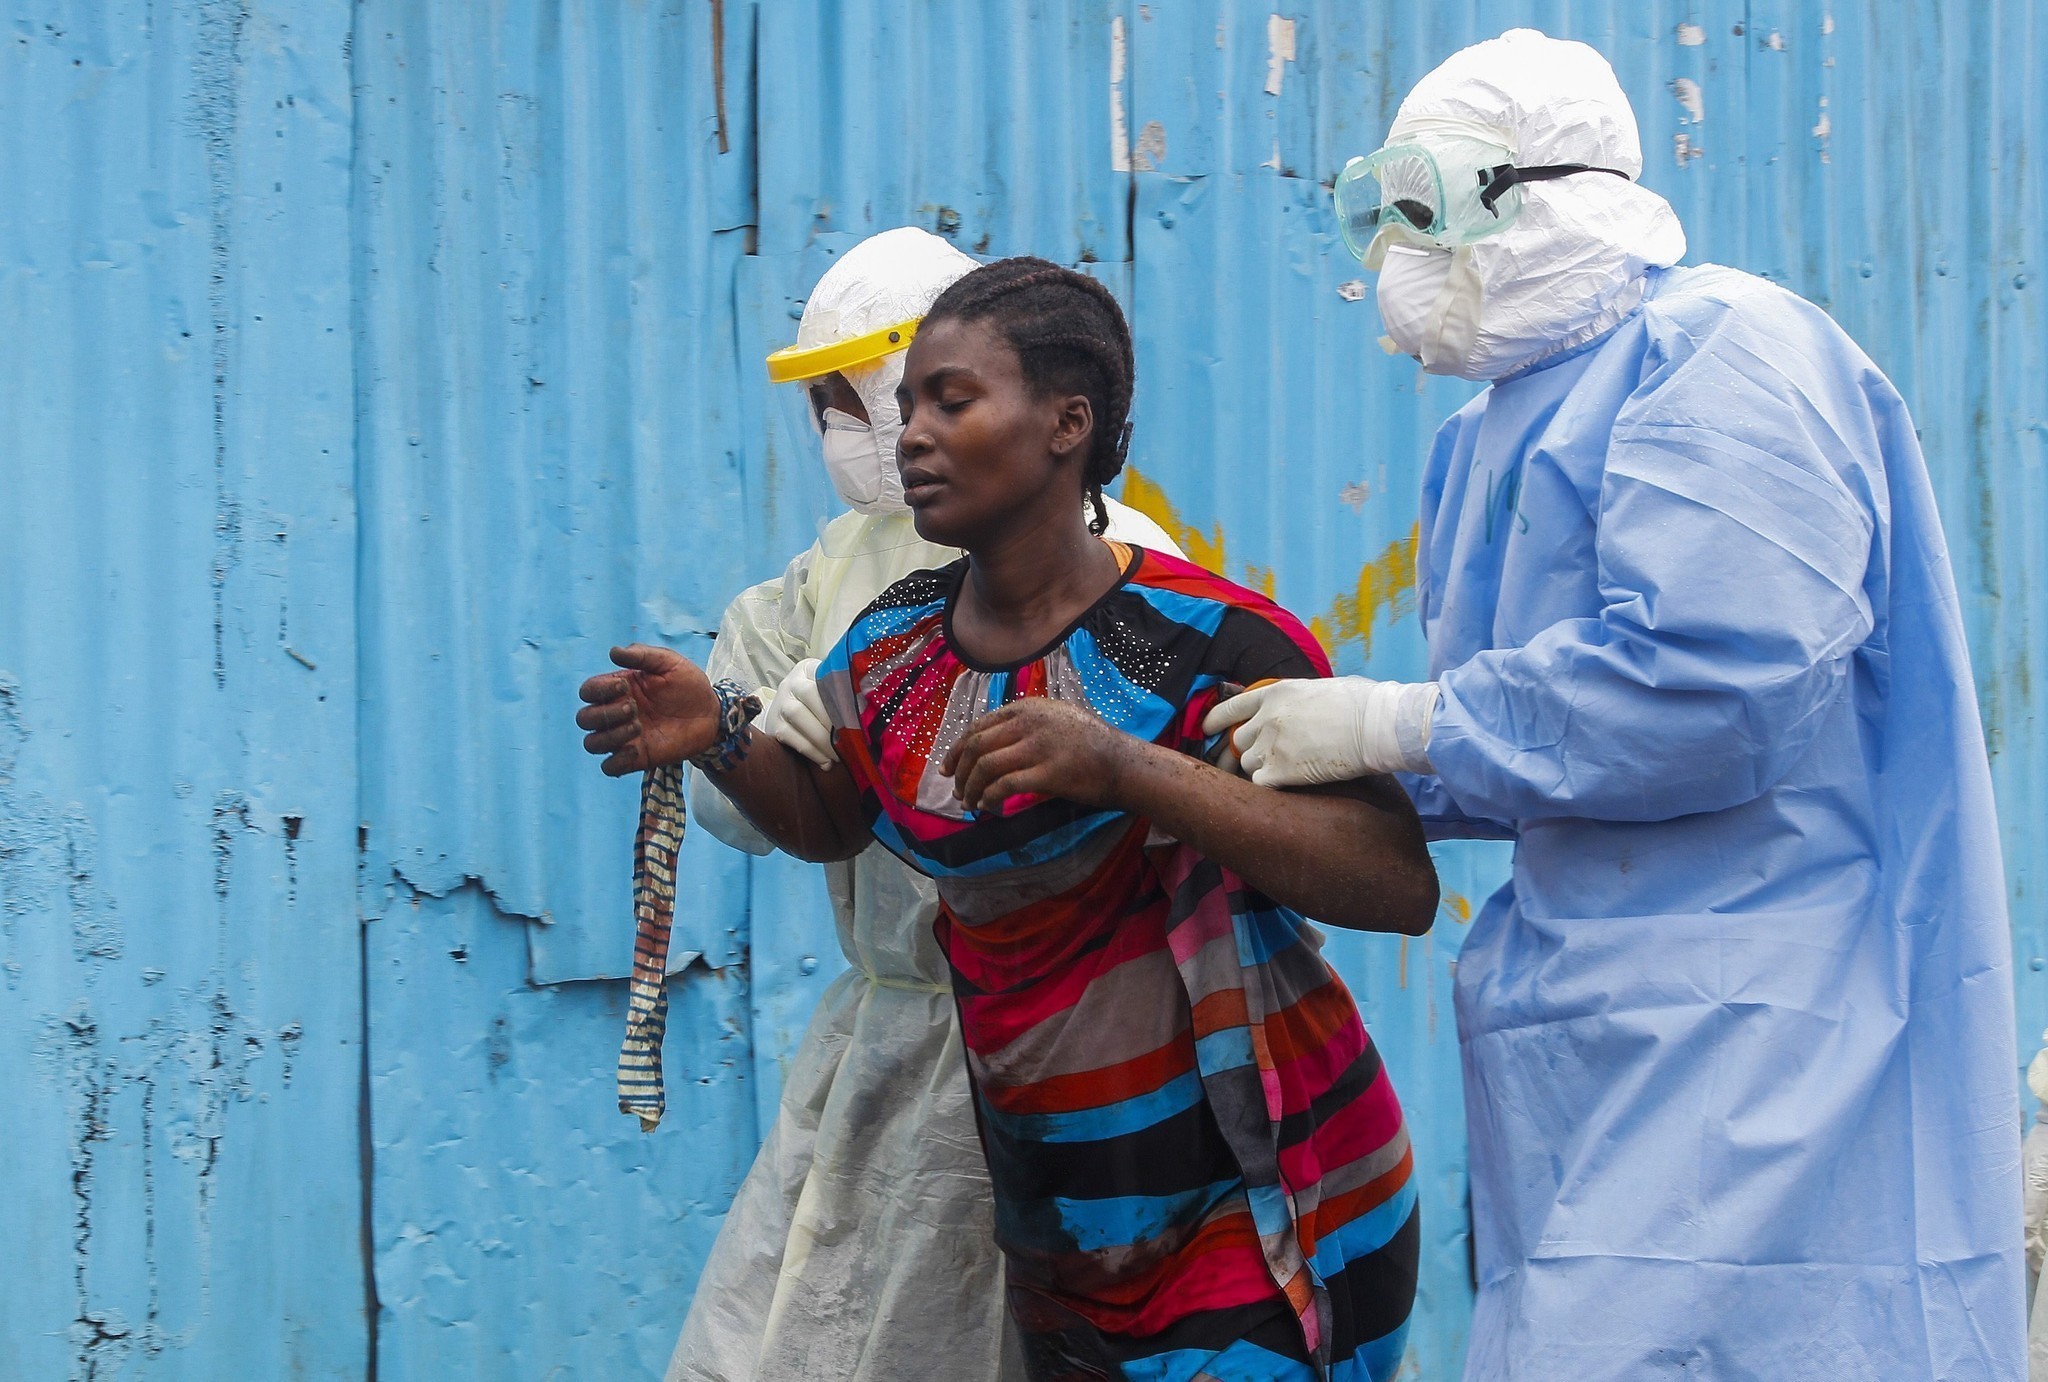 ايبولا .. ارقام جديدة تهدد بمستقبل مرعب